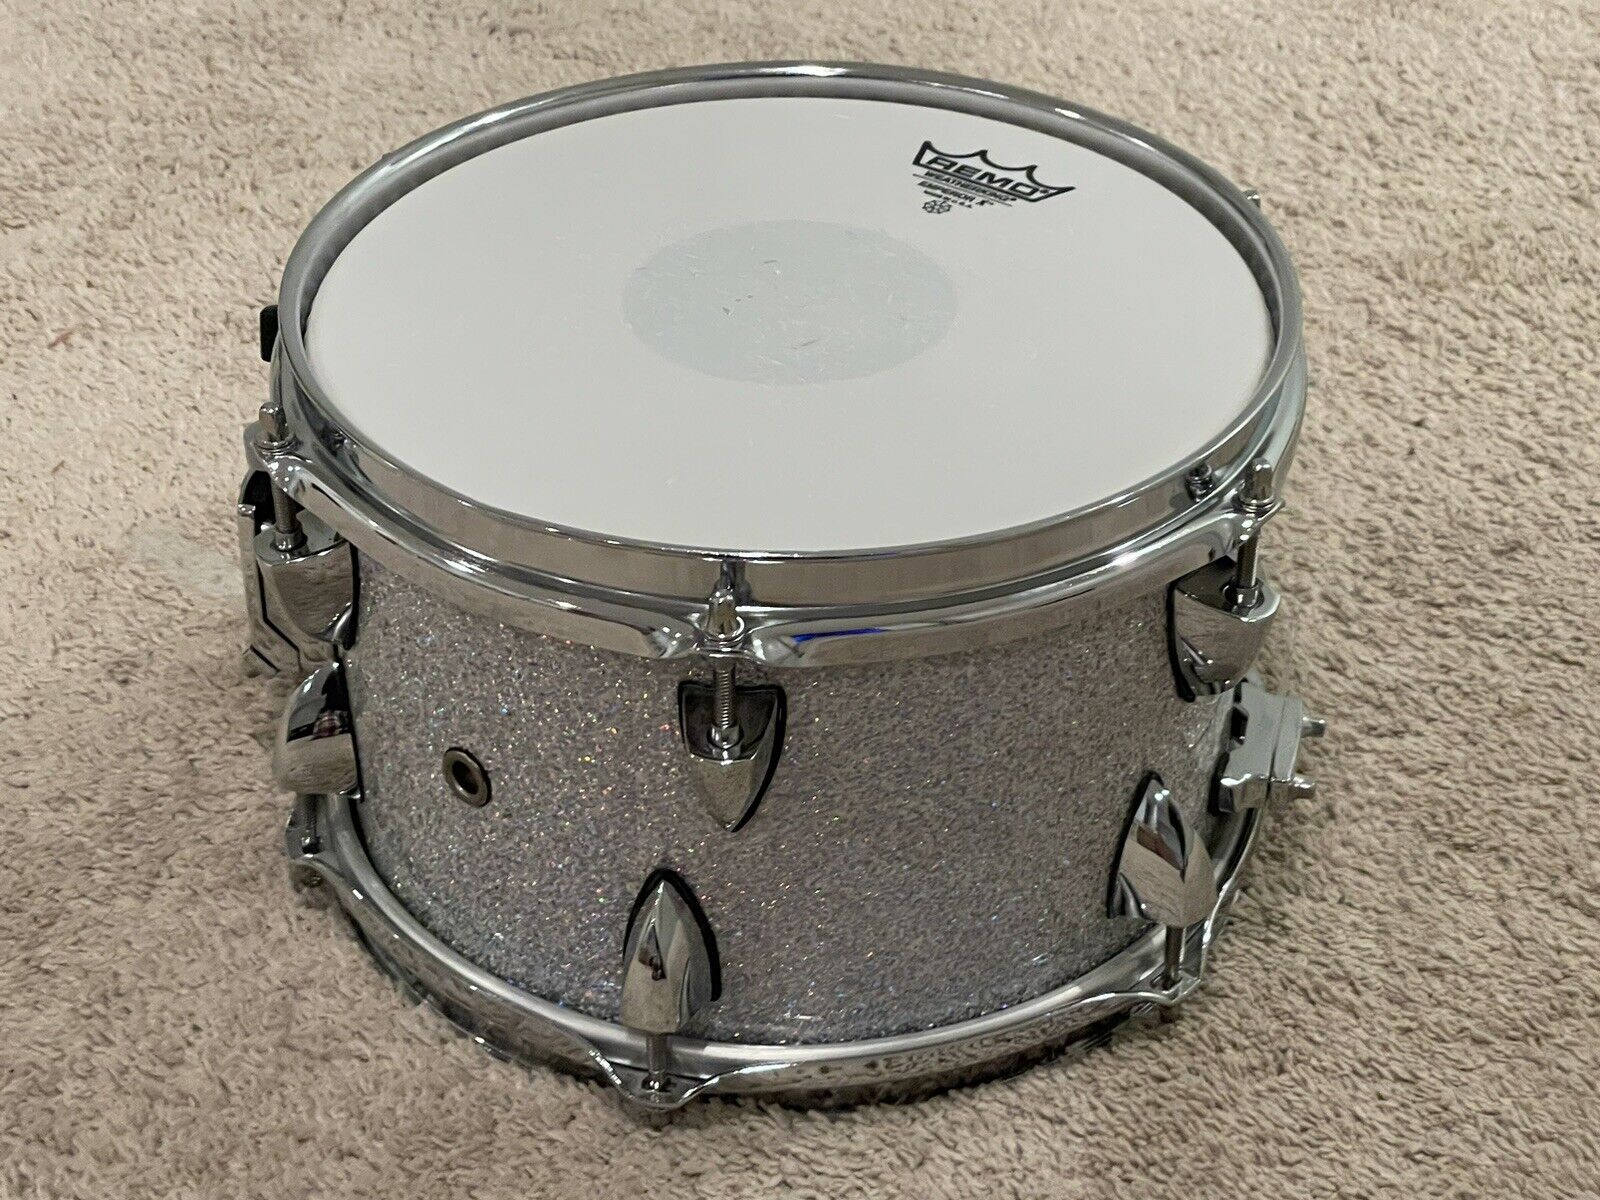 OCDP 10 X 6.5” Snare Drum Travis Barker Signature Model Drums Drumset Side 7